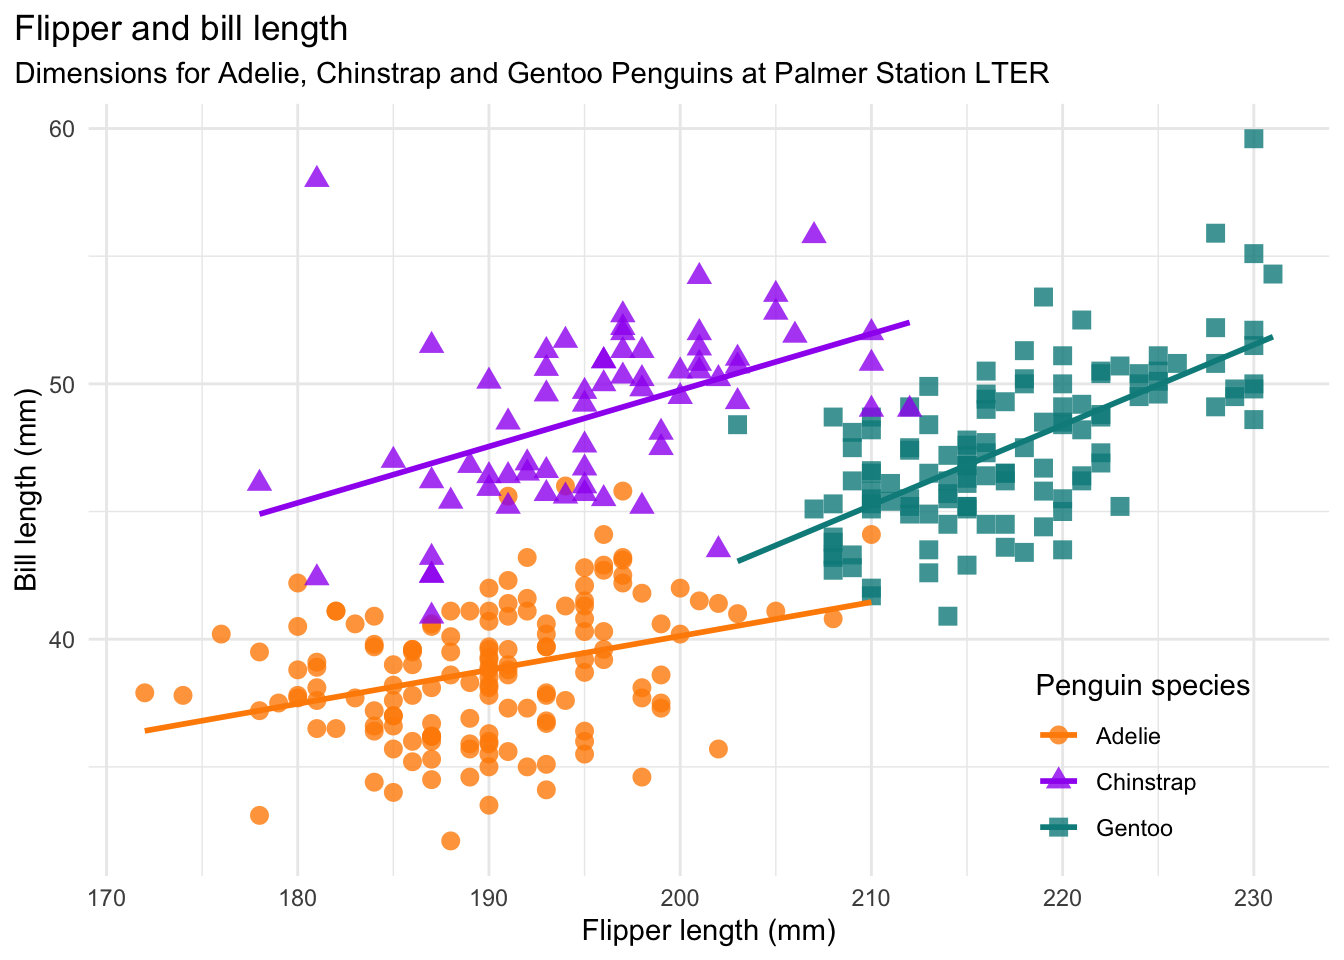 Plot of bill length vs. flipper length for the Palmer Penguins